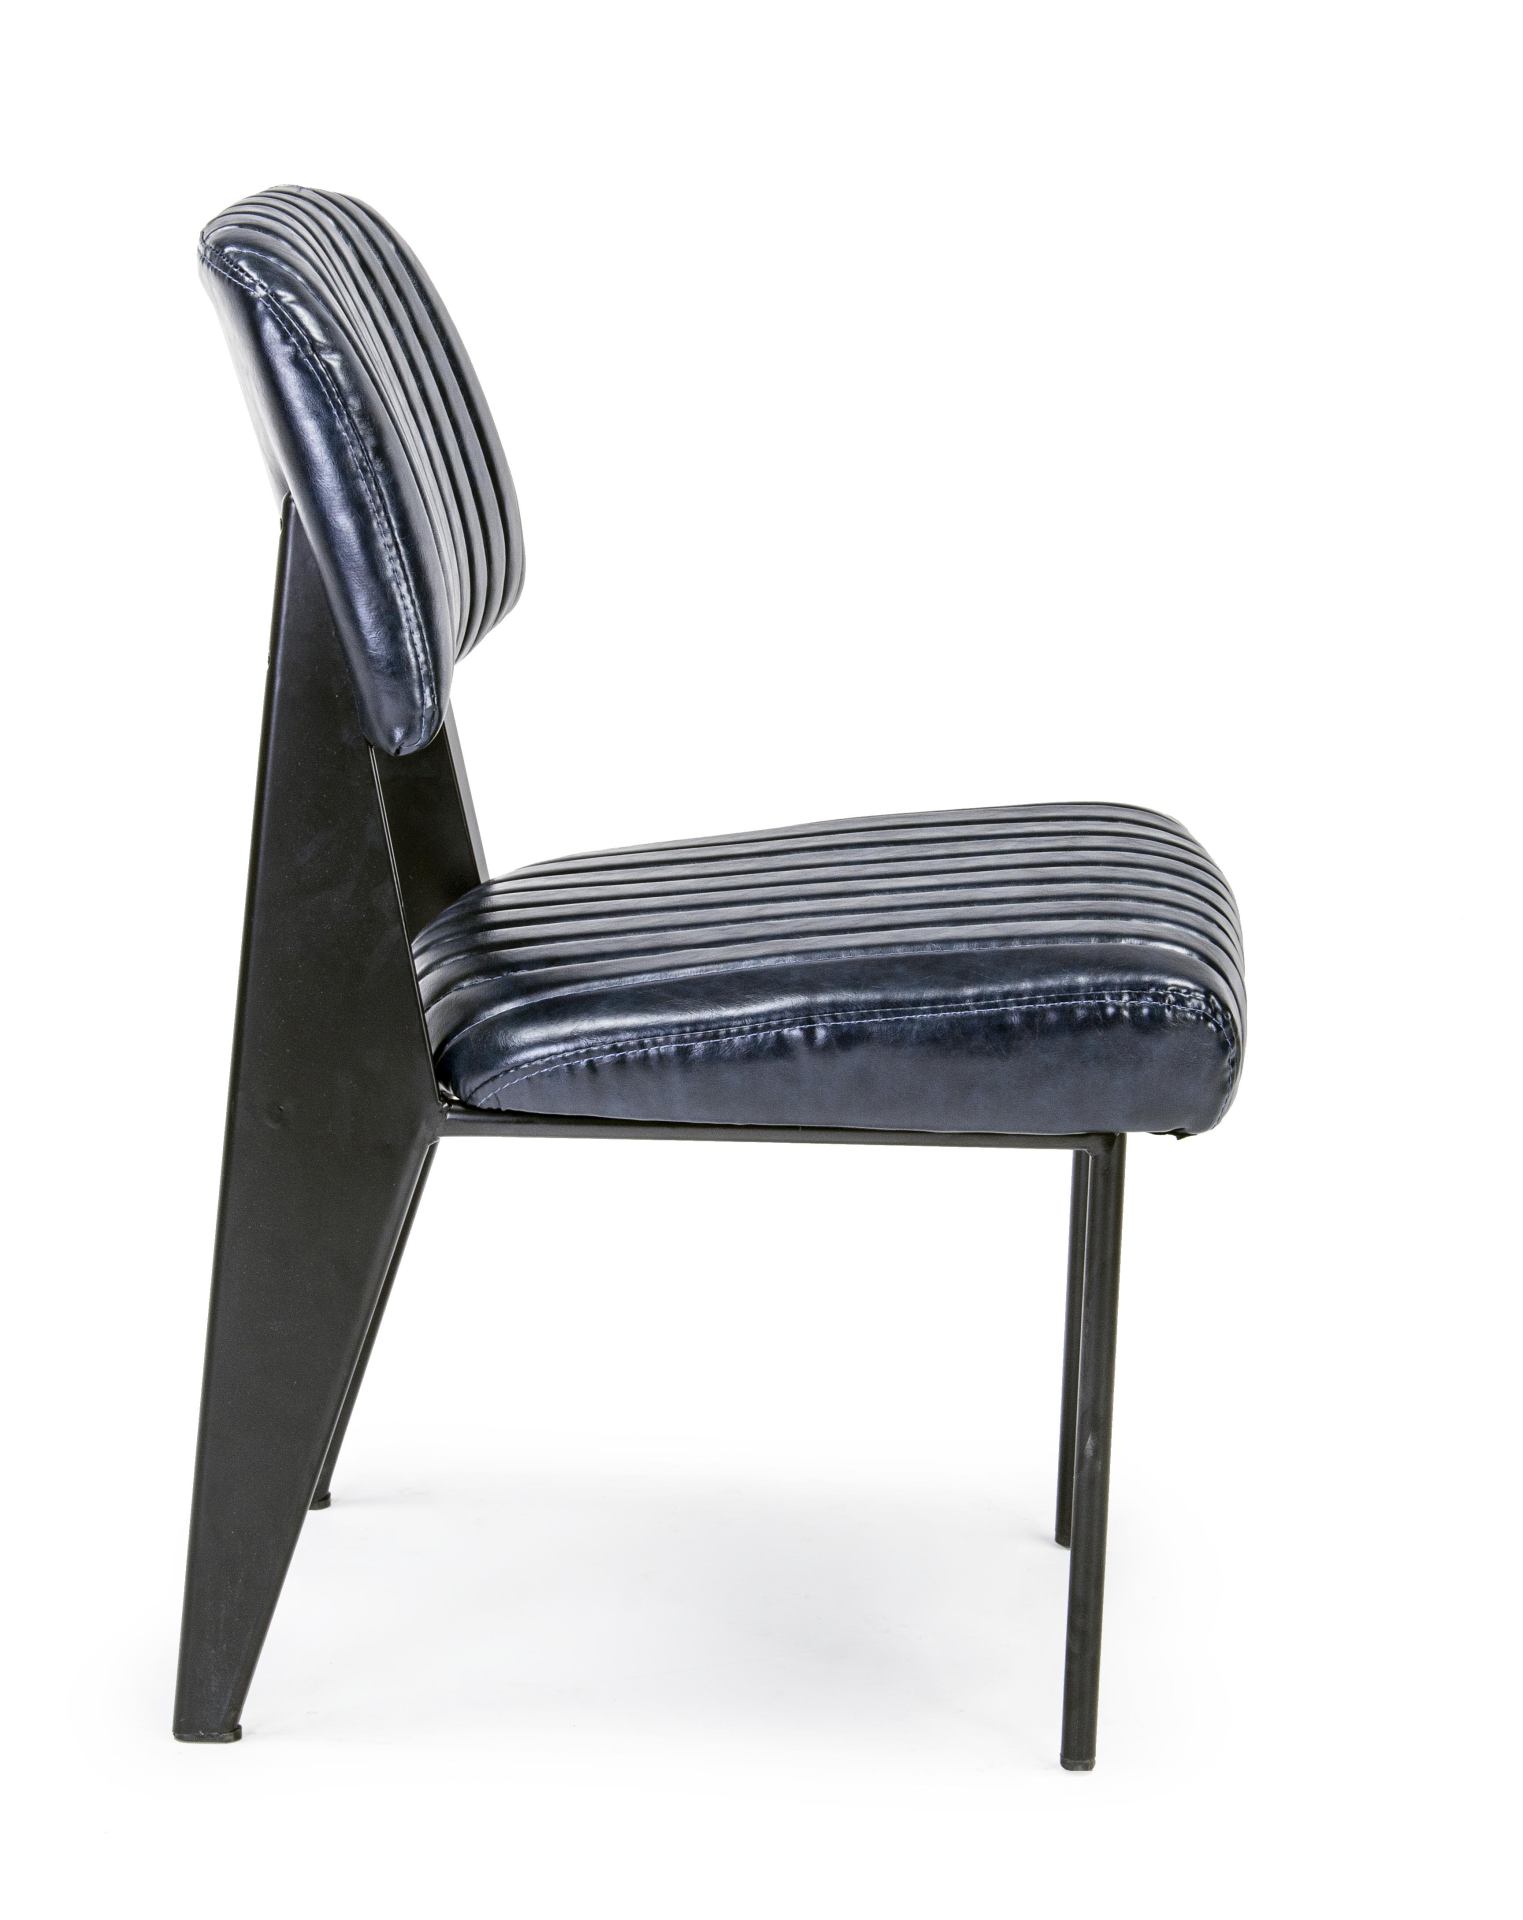 Der Stuhl Nelly überzeugt mit seinem industriellen Design. Gefertigt wurde der Stuhl aus Kunstleder, welches einen blauen Farbton besitzt. Das Gestell ist aus Stahl und ist schwarz. Die Sitzhöhe beträgt 45 cm.